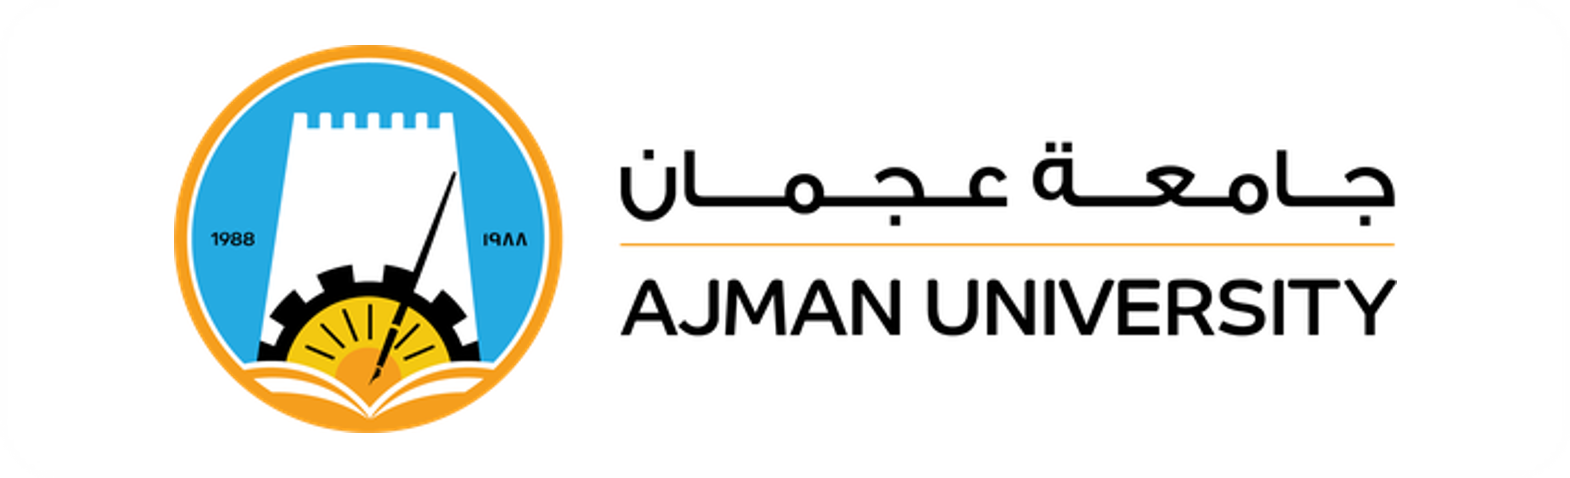 Ajman University Logo